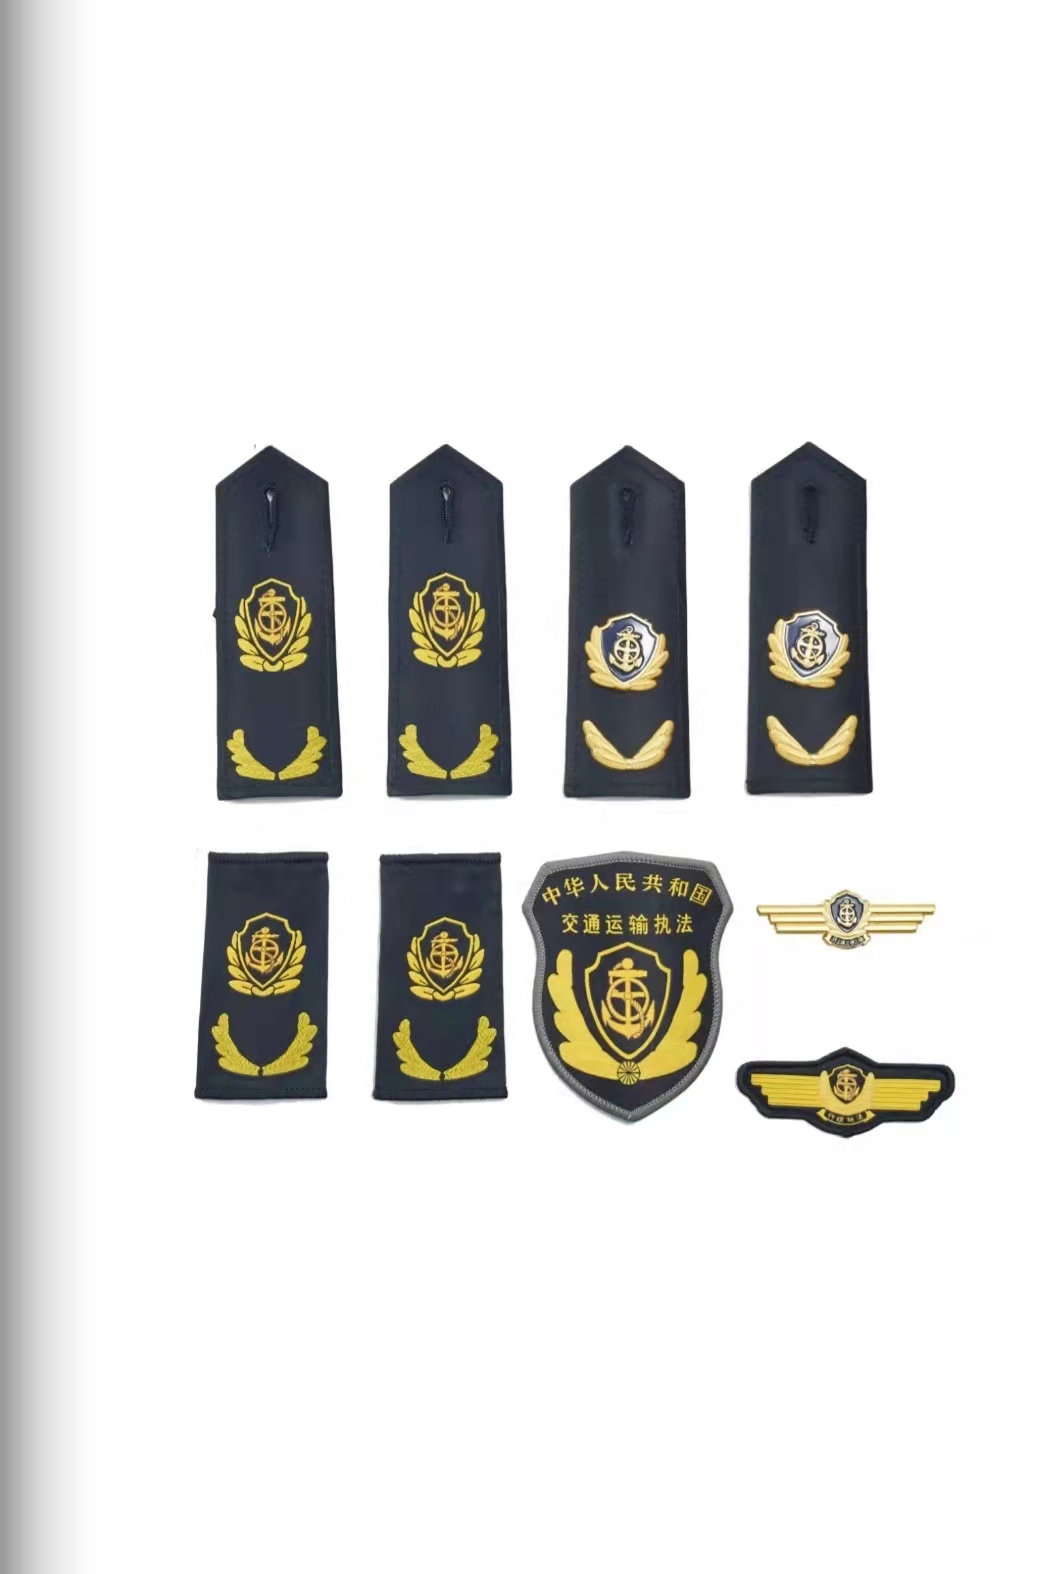 江苏六部门统一交通运输执法服装标志